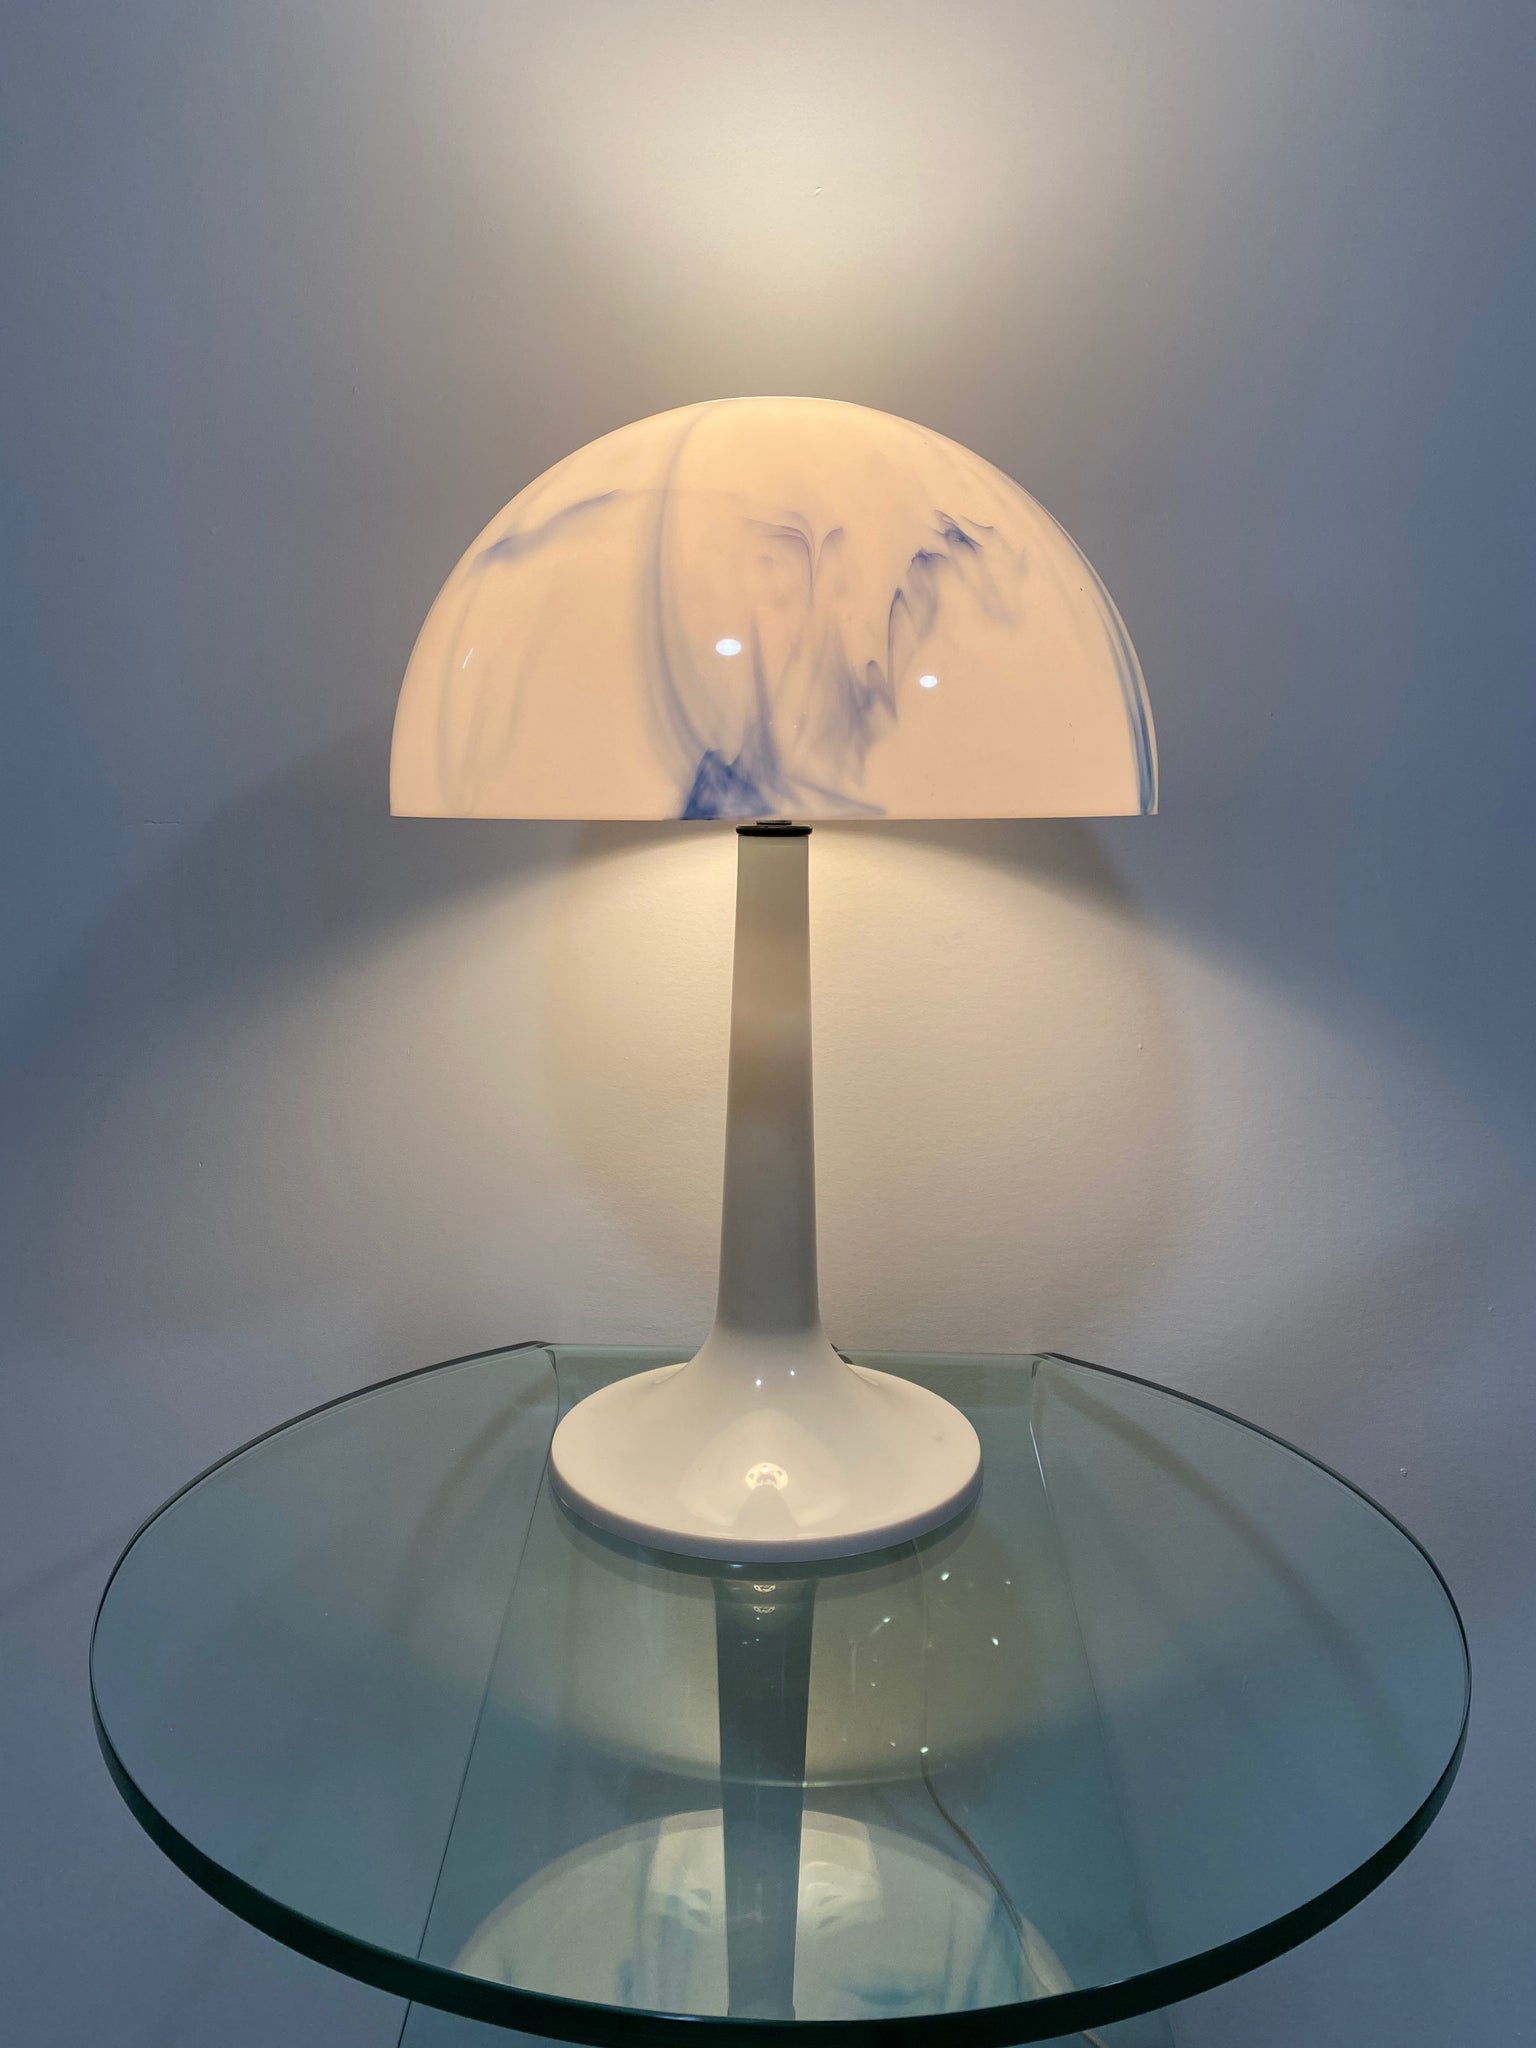 Blue marbled plastic mushroom lamp